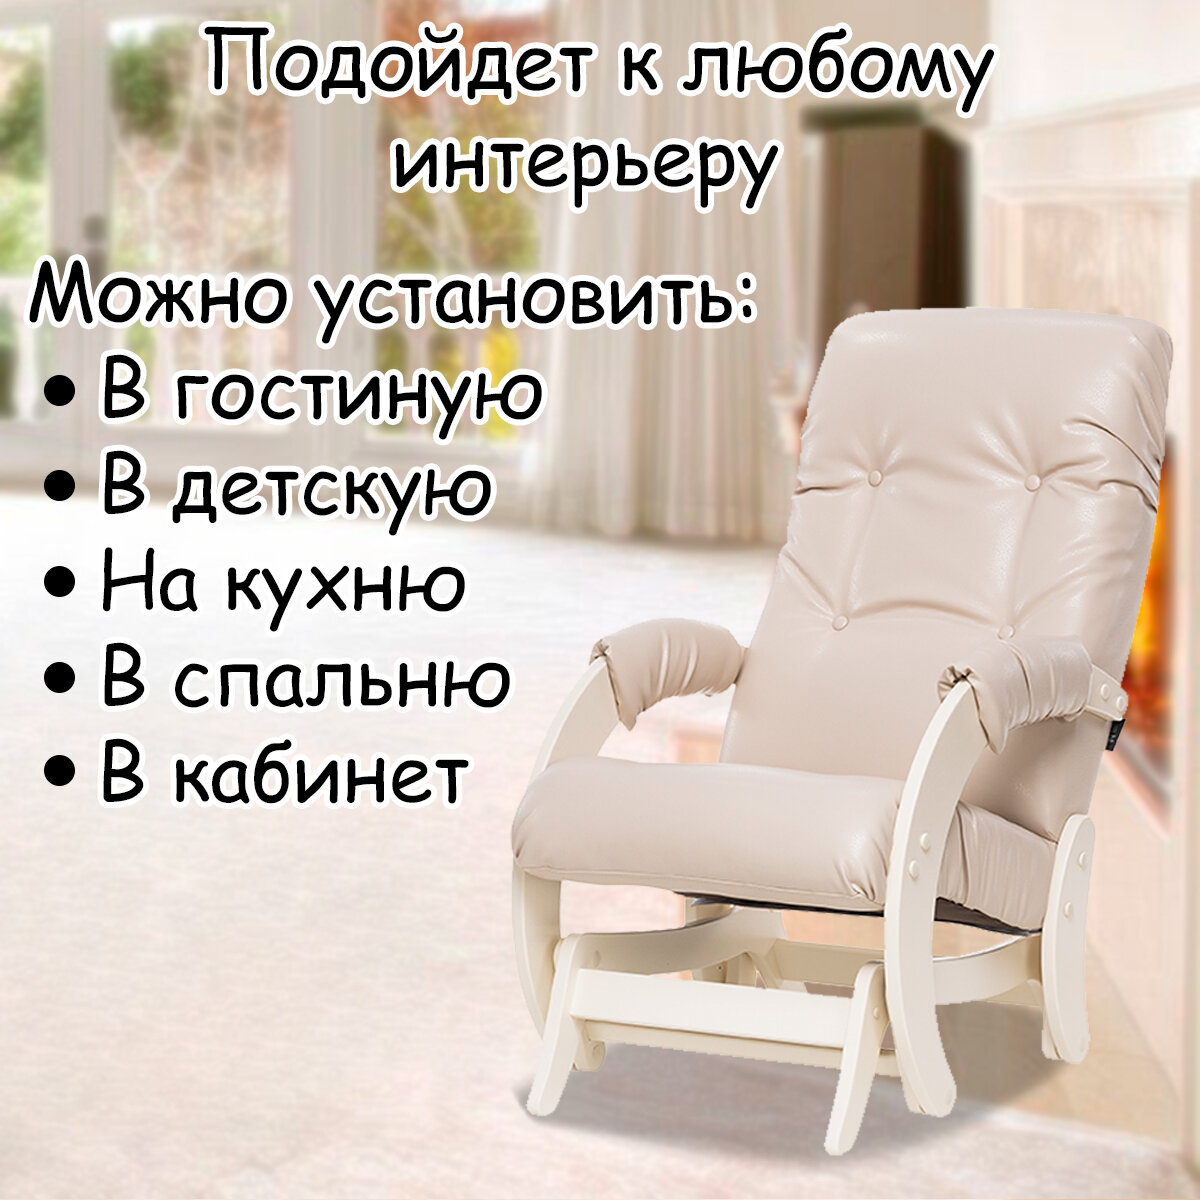 Кресло-качалка (глайдер) с маятниковым механизмом для взрослых 55х88х100 см, модель 68, экокожа, цвет: Polaris beige (бежевый), каркас: Dub shampan (бежевый) - фотография № 10